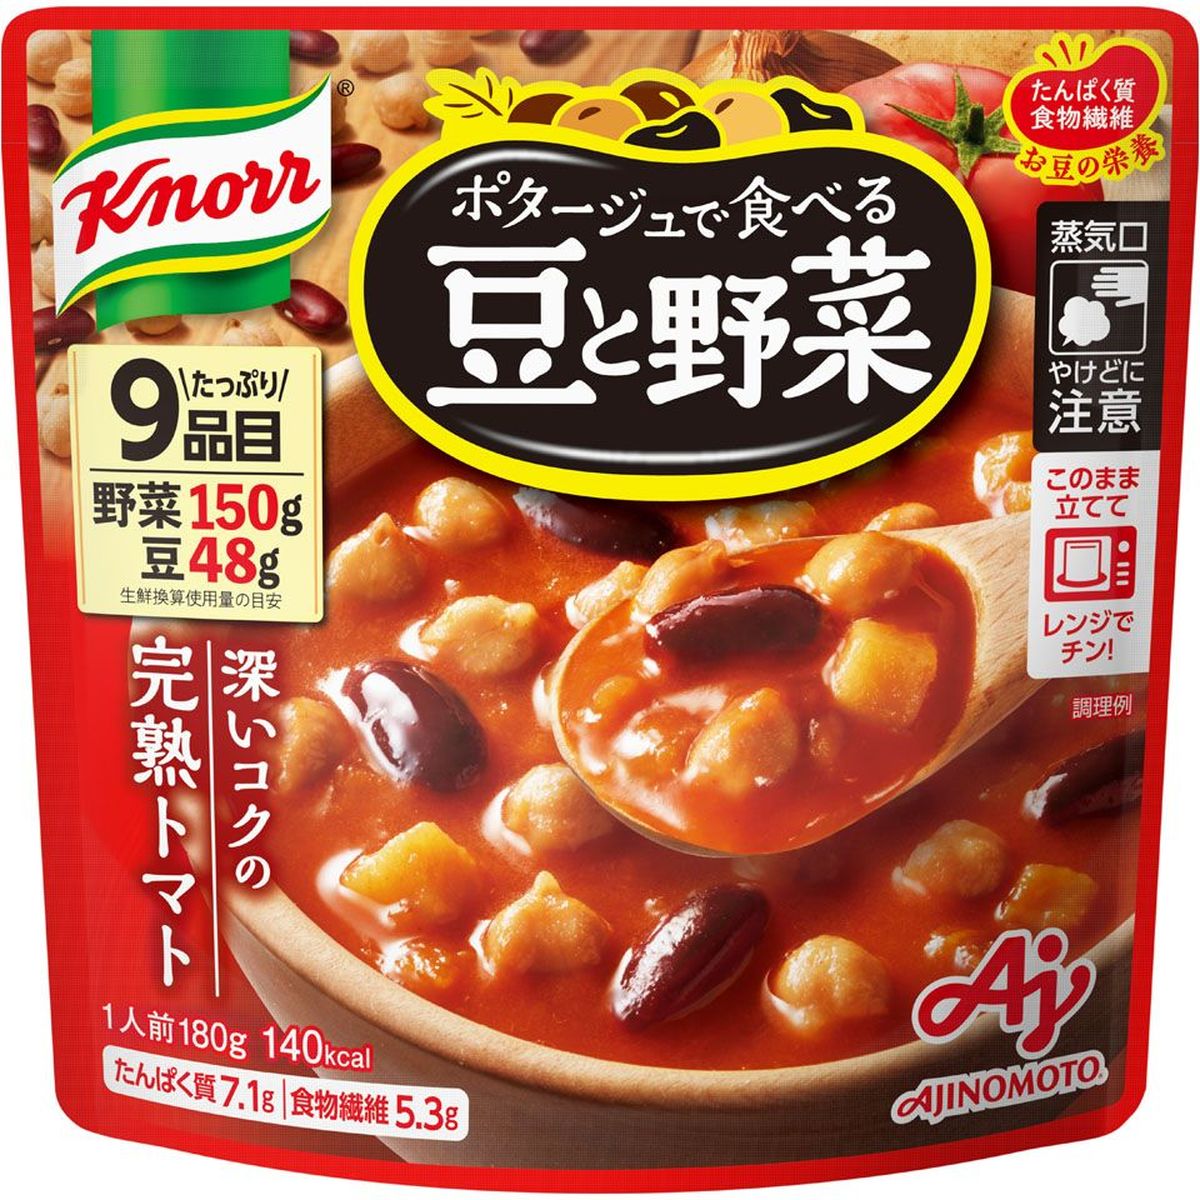 【7個入リ】クノール ポタージュ豆ト野菜 完熟トマト 180g